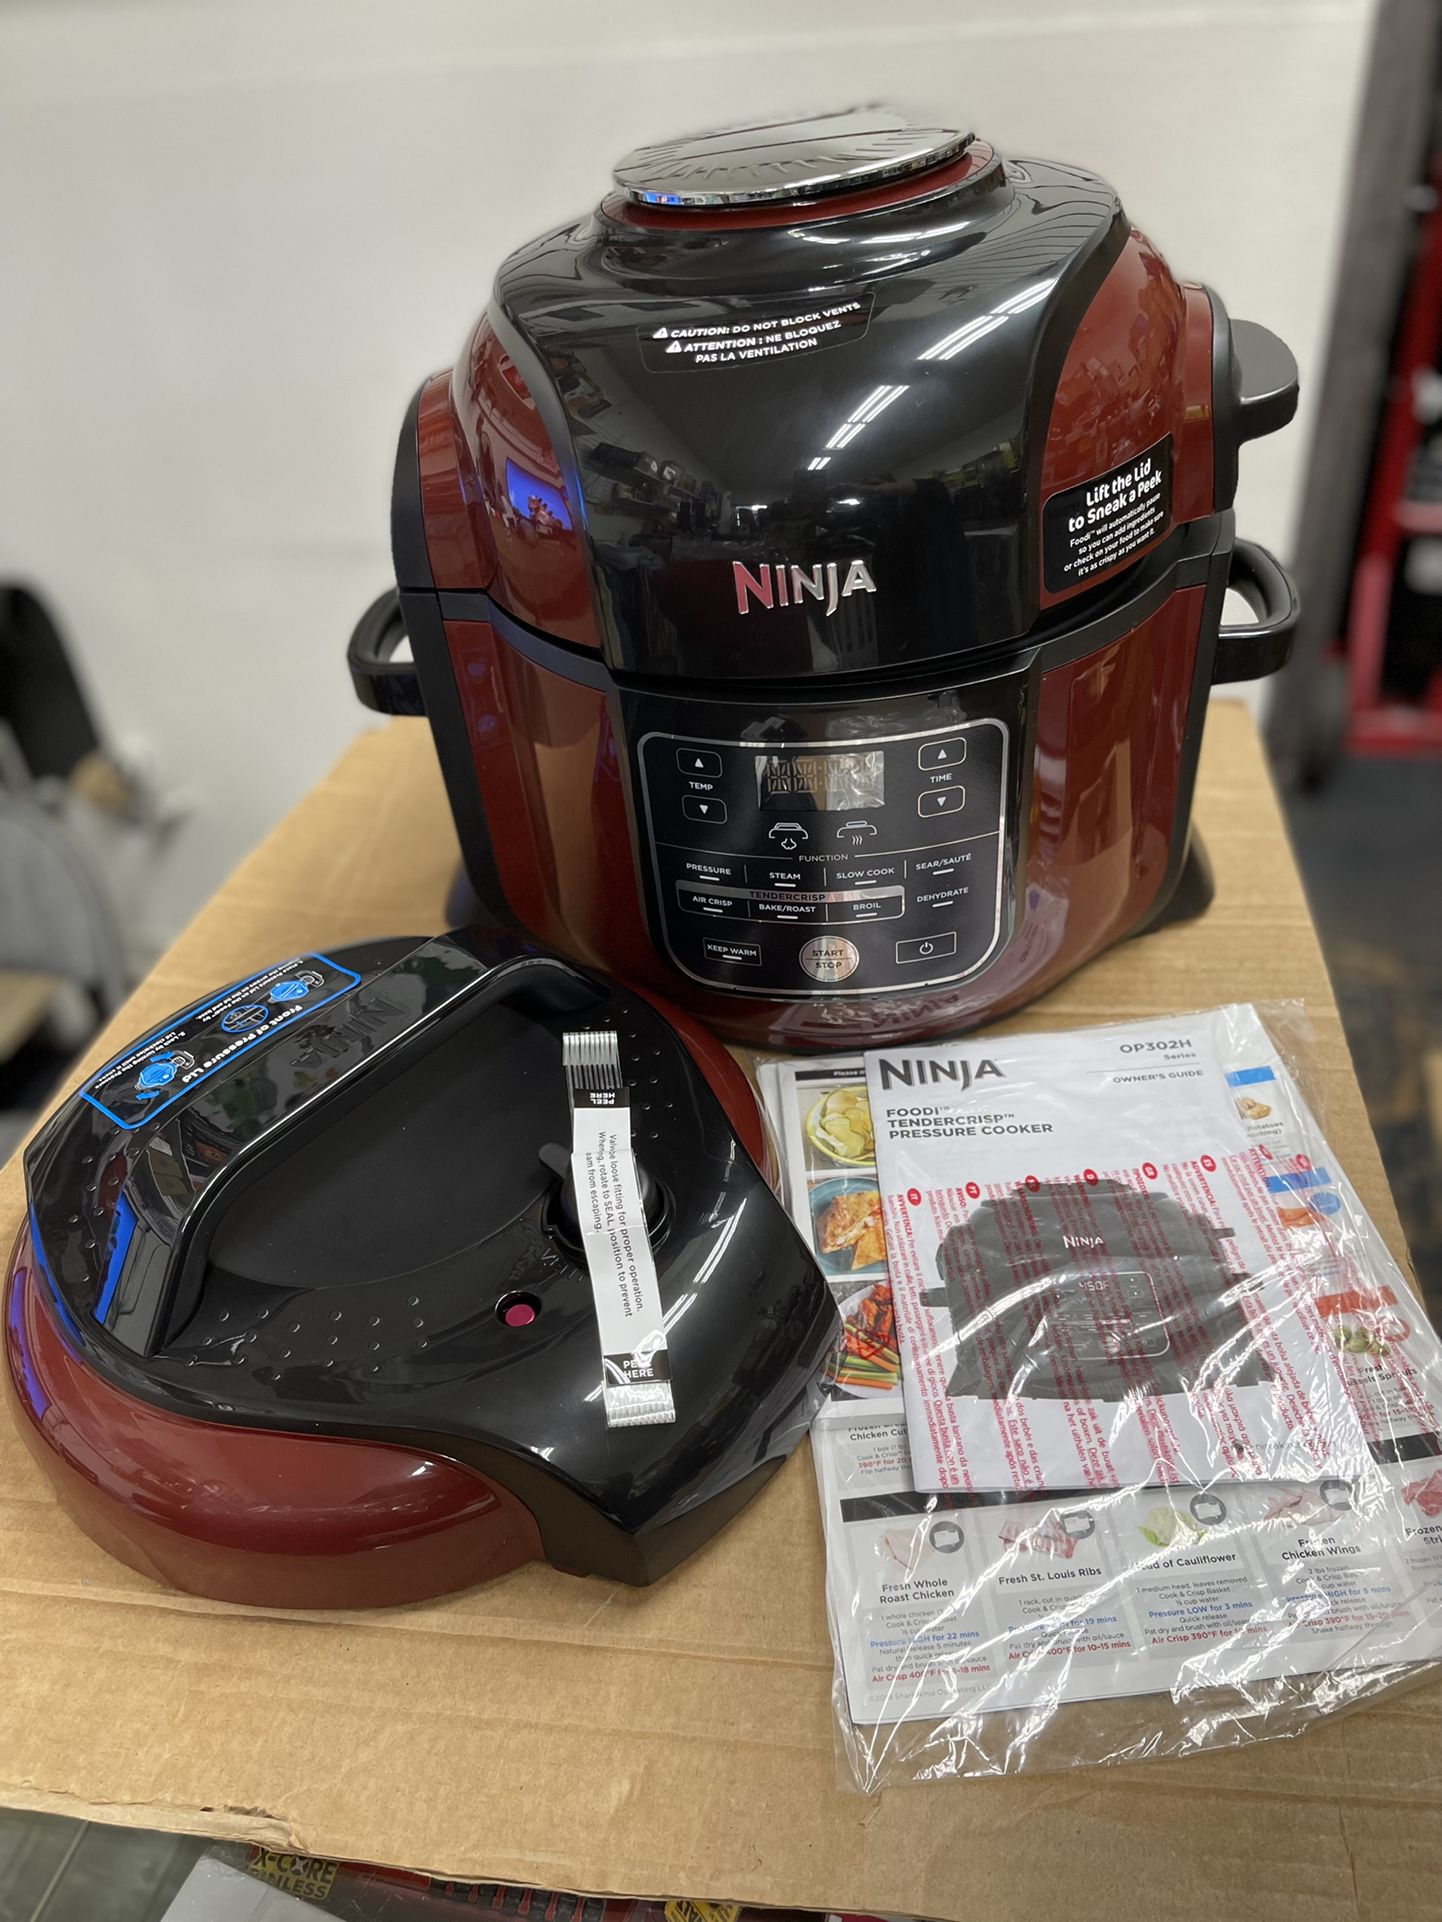 Ninja Foodi Possible Cooker Pro for Sale in West Lafayette, IN - OfferUp